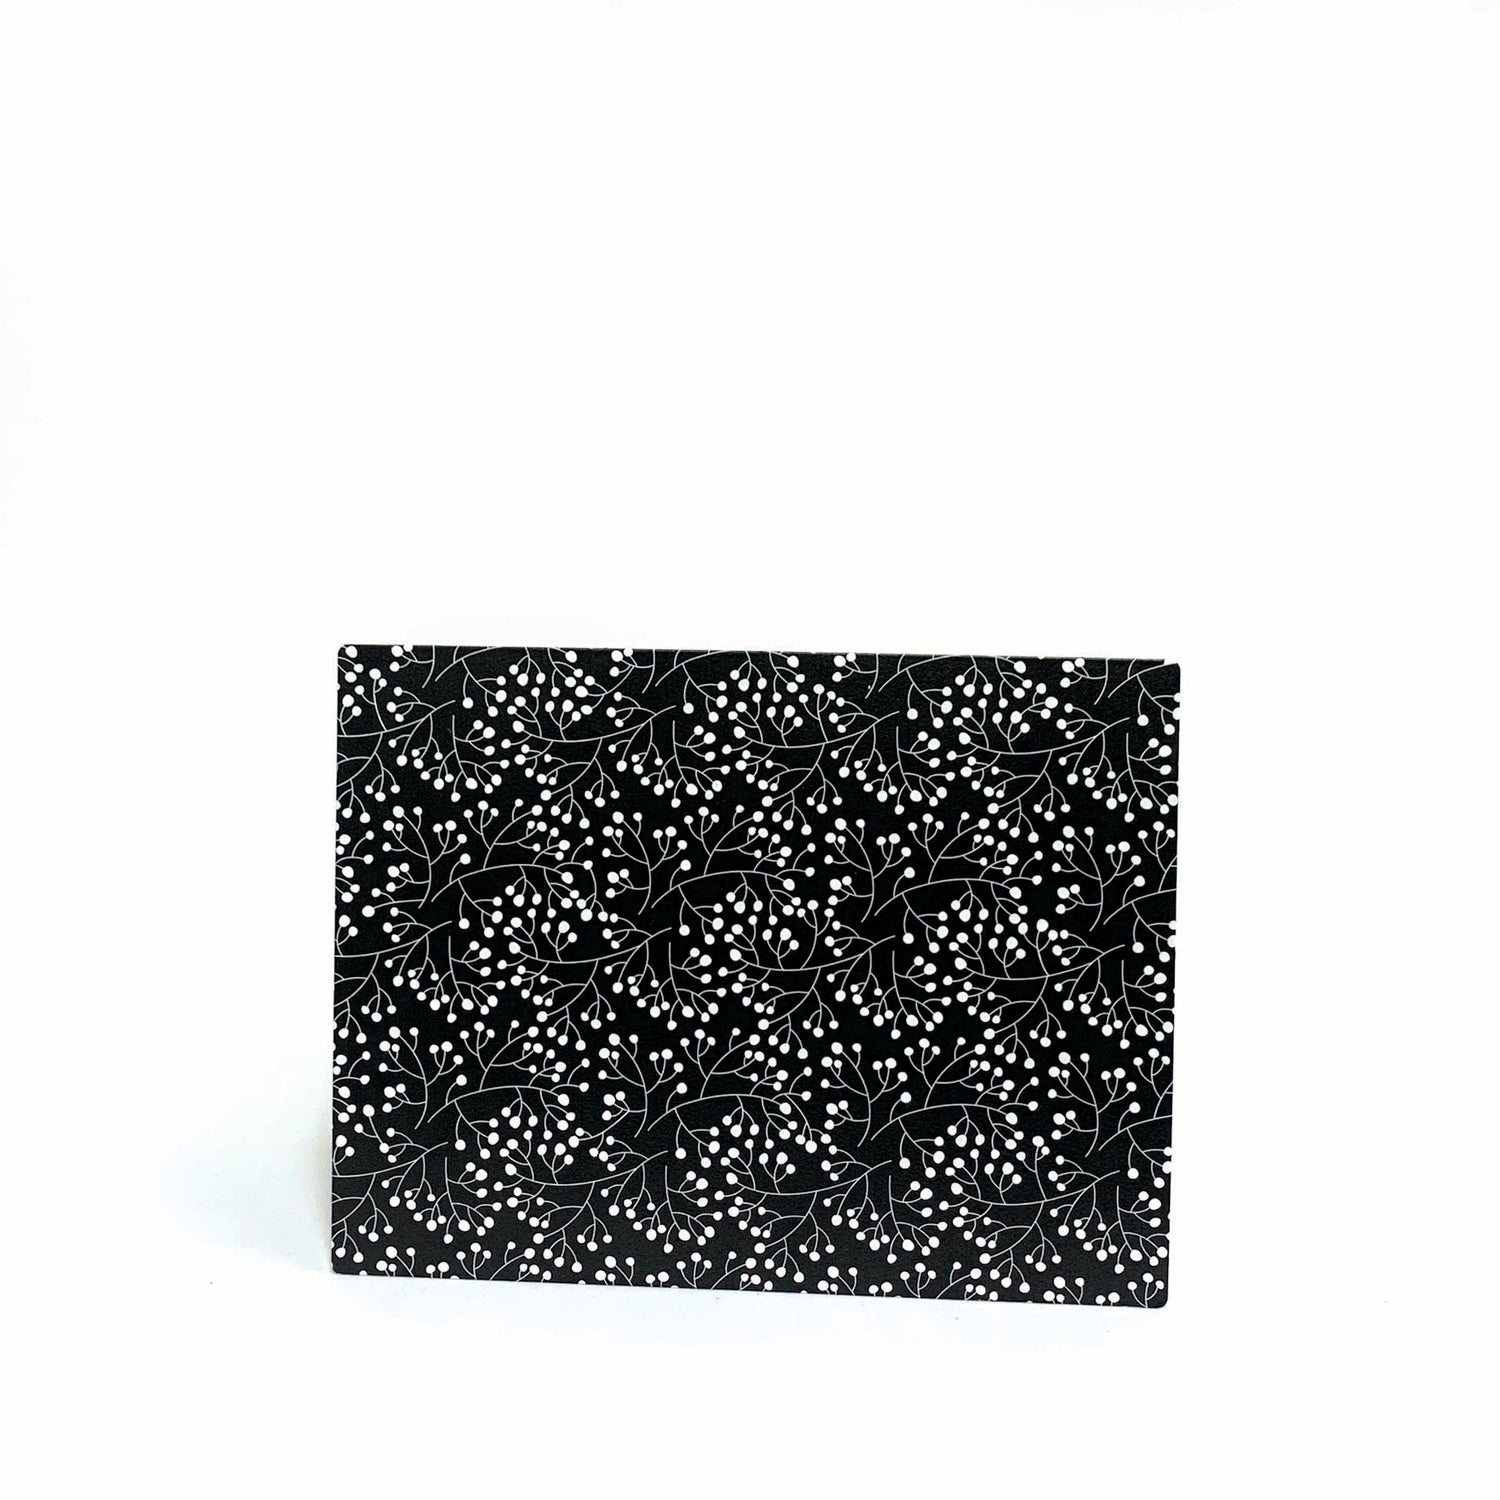 Easel w/ Kickstand 8.5x6.5 Black/White Berries Pattern